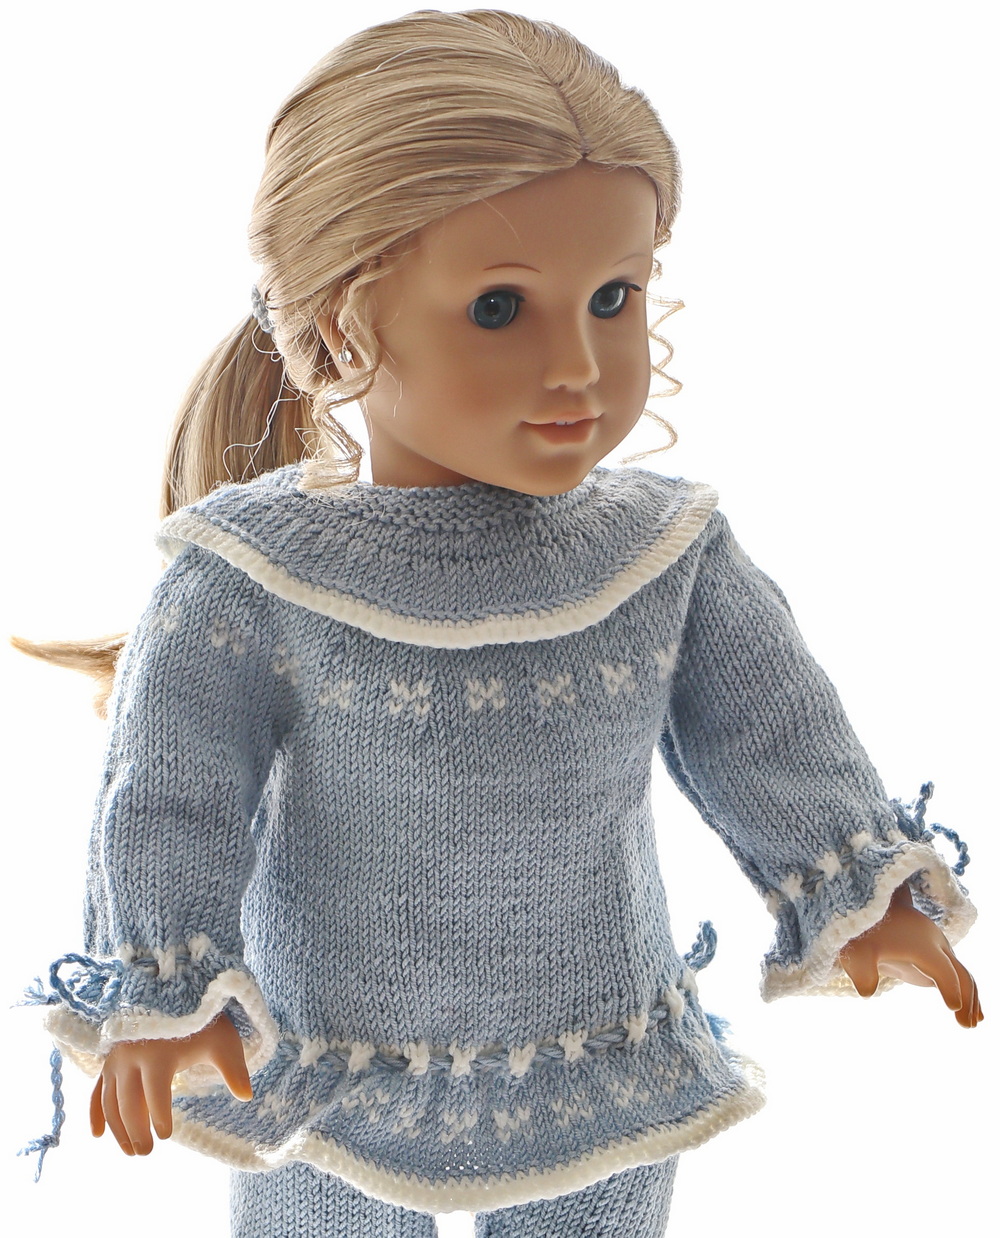 0232d-03-knitting-patterns-for-american-girl-dolls.jpg